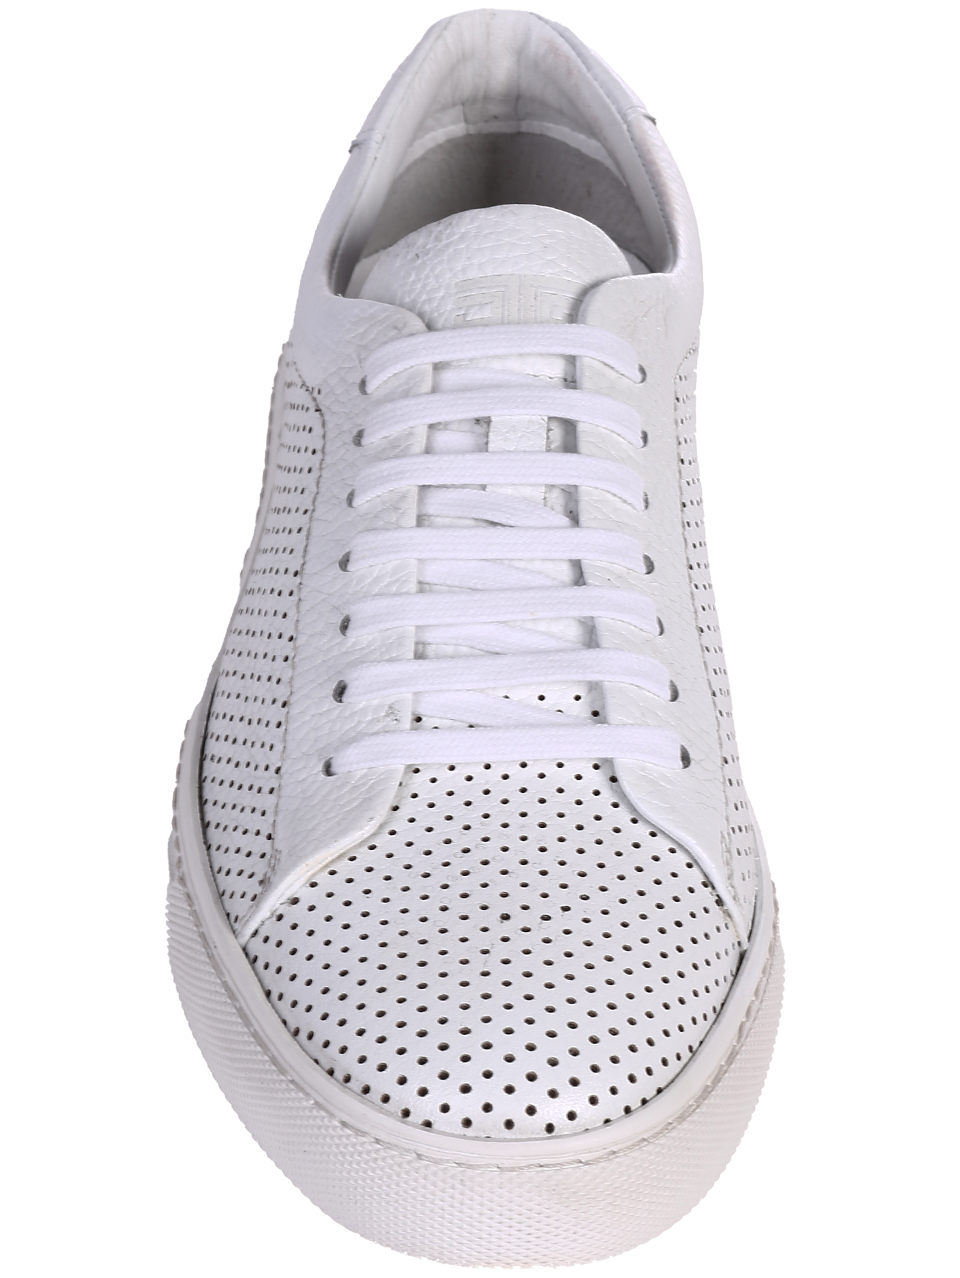 Eжедневни мъжки обувки от естествена кожа в бяло 7AT-24365 white